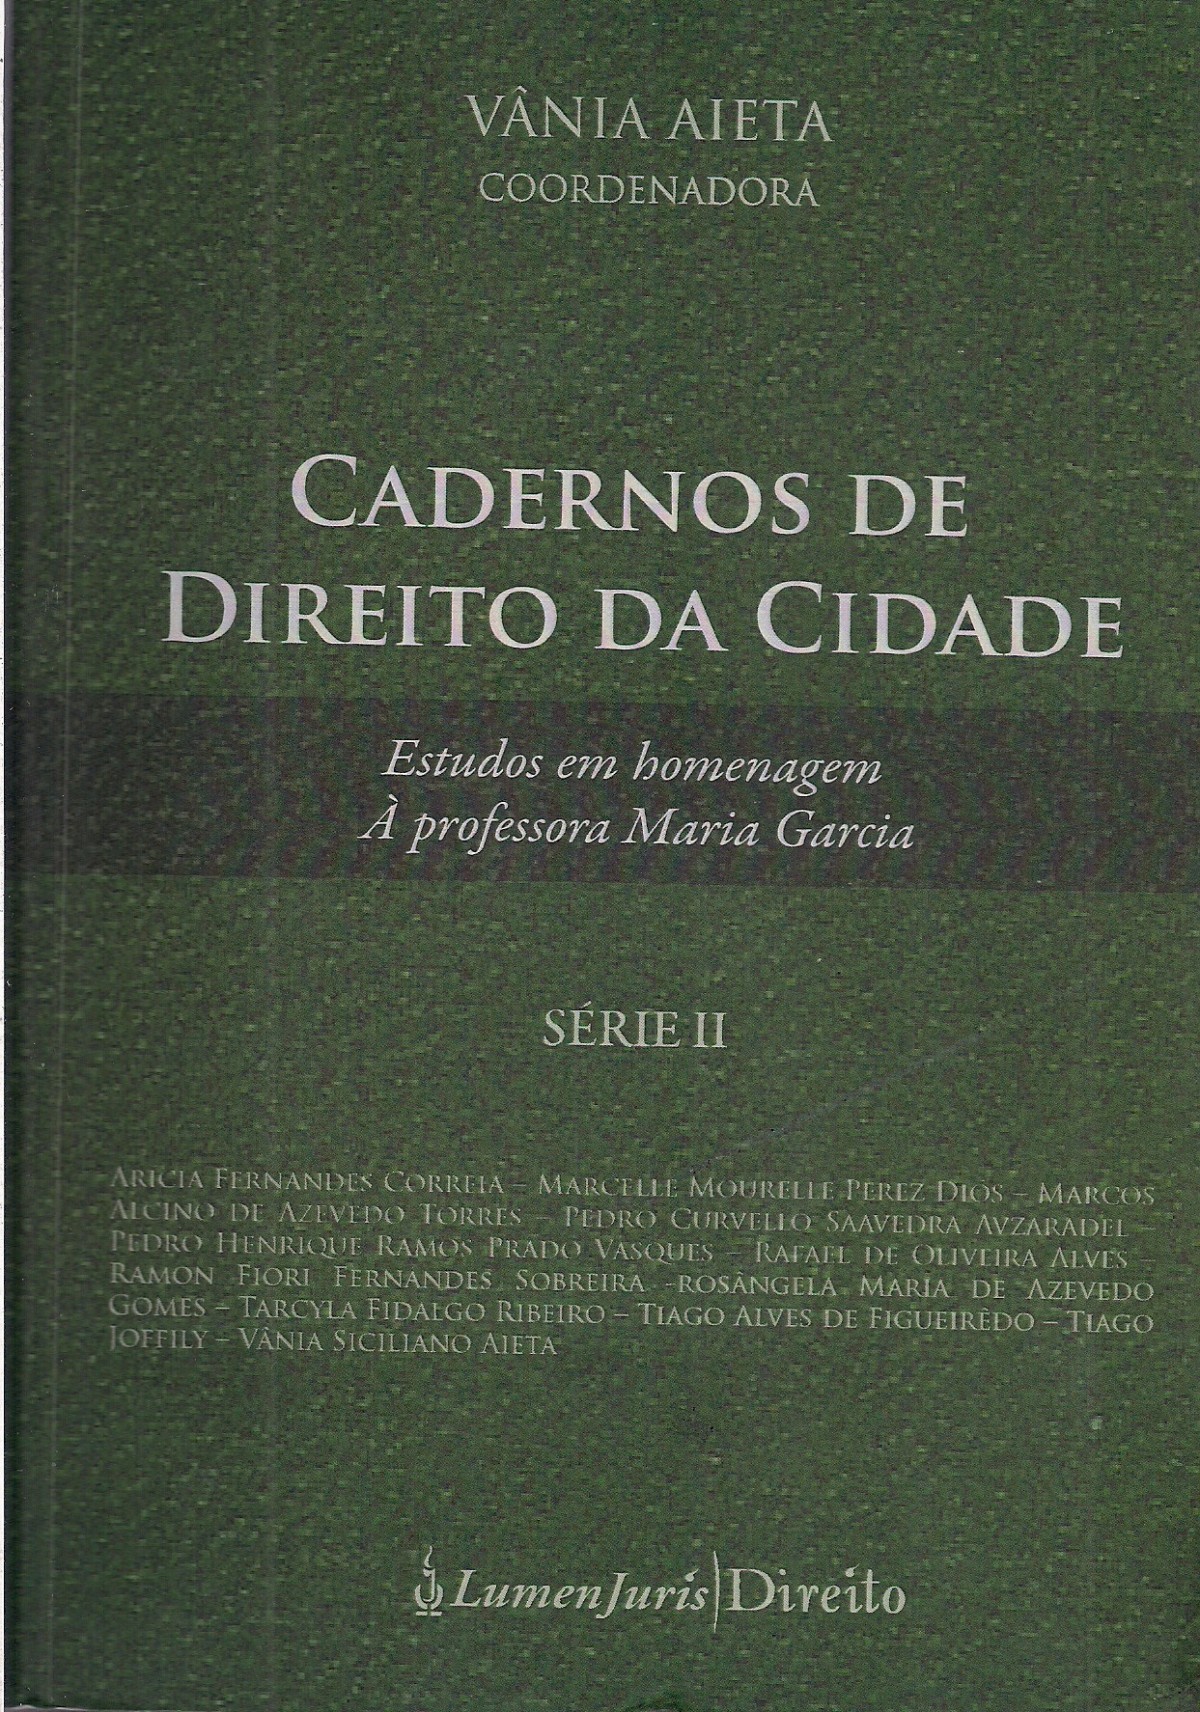 Foto 1 - Cadernos de Direito da Cidade - Série II - 2014